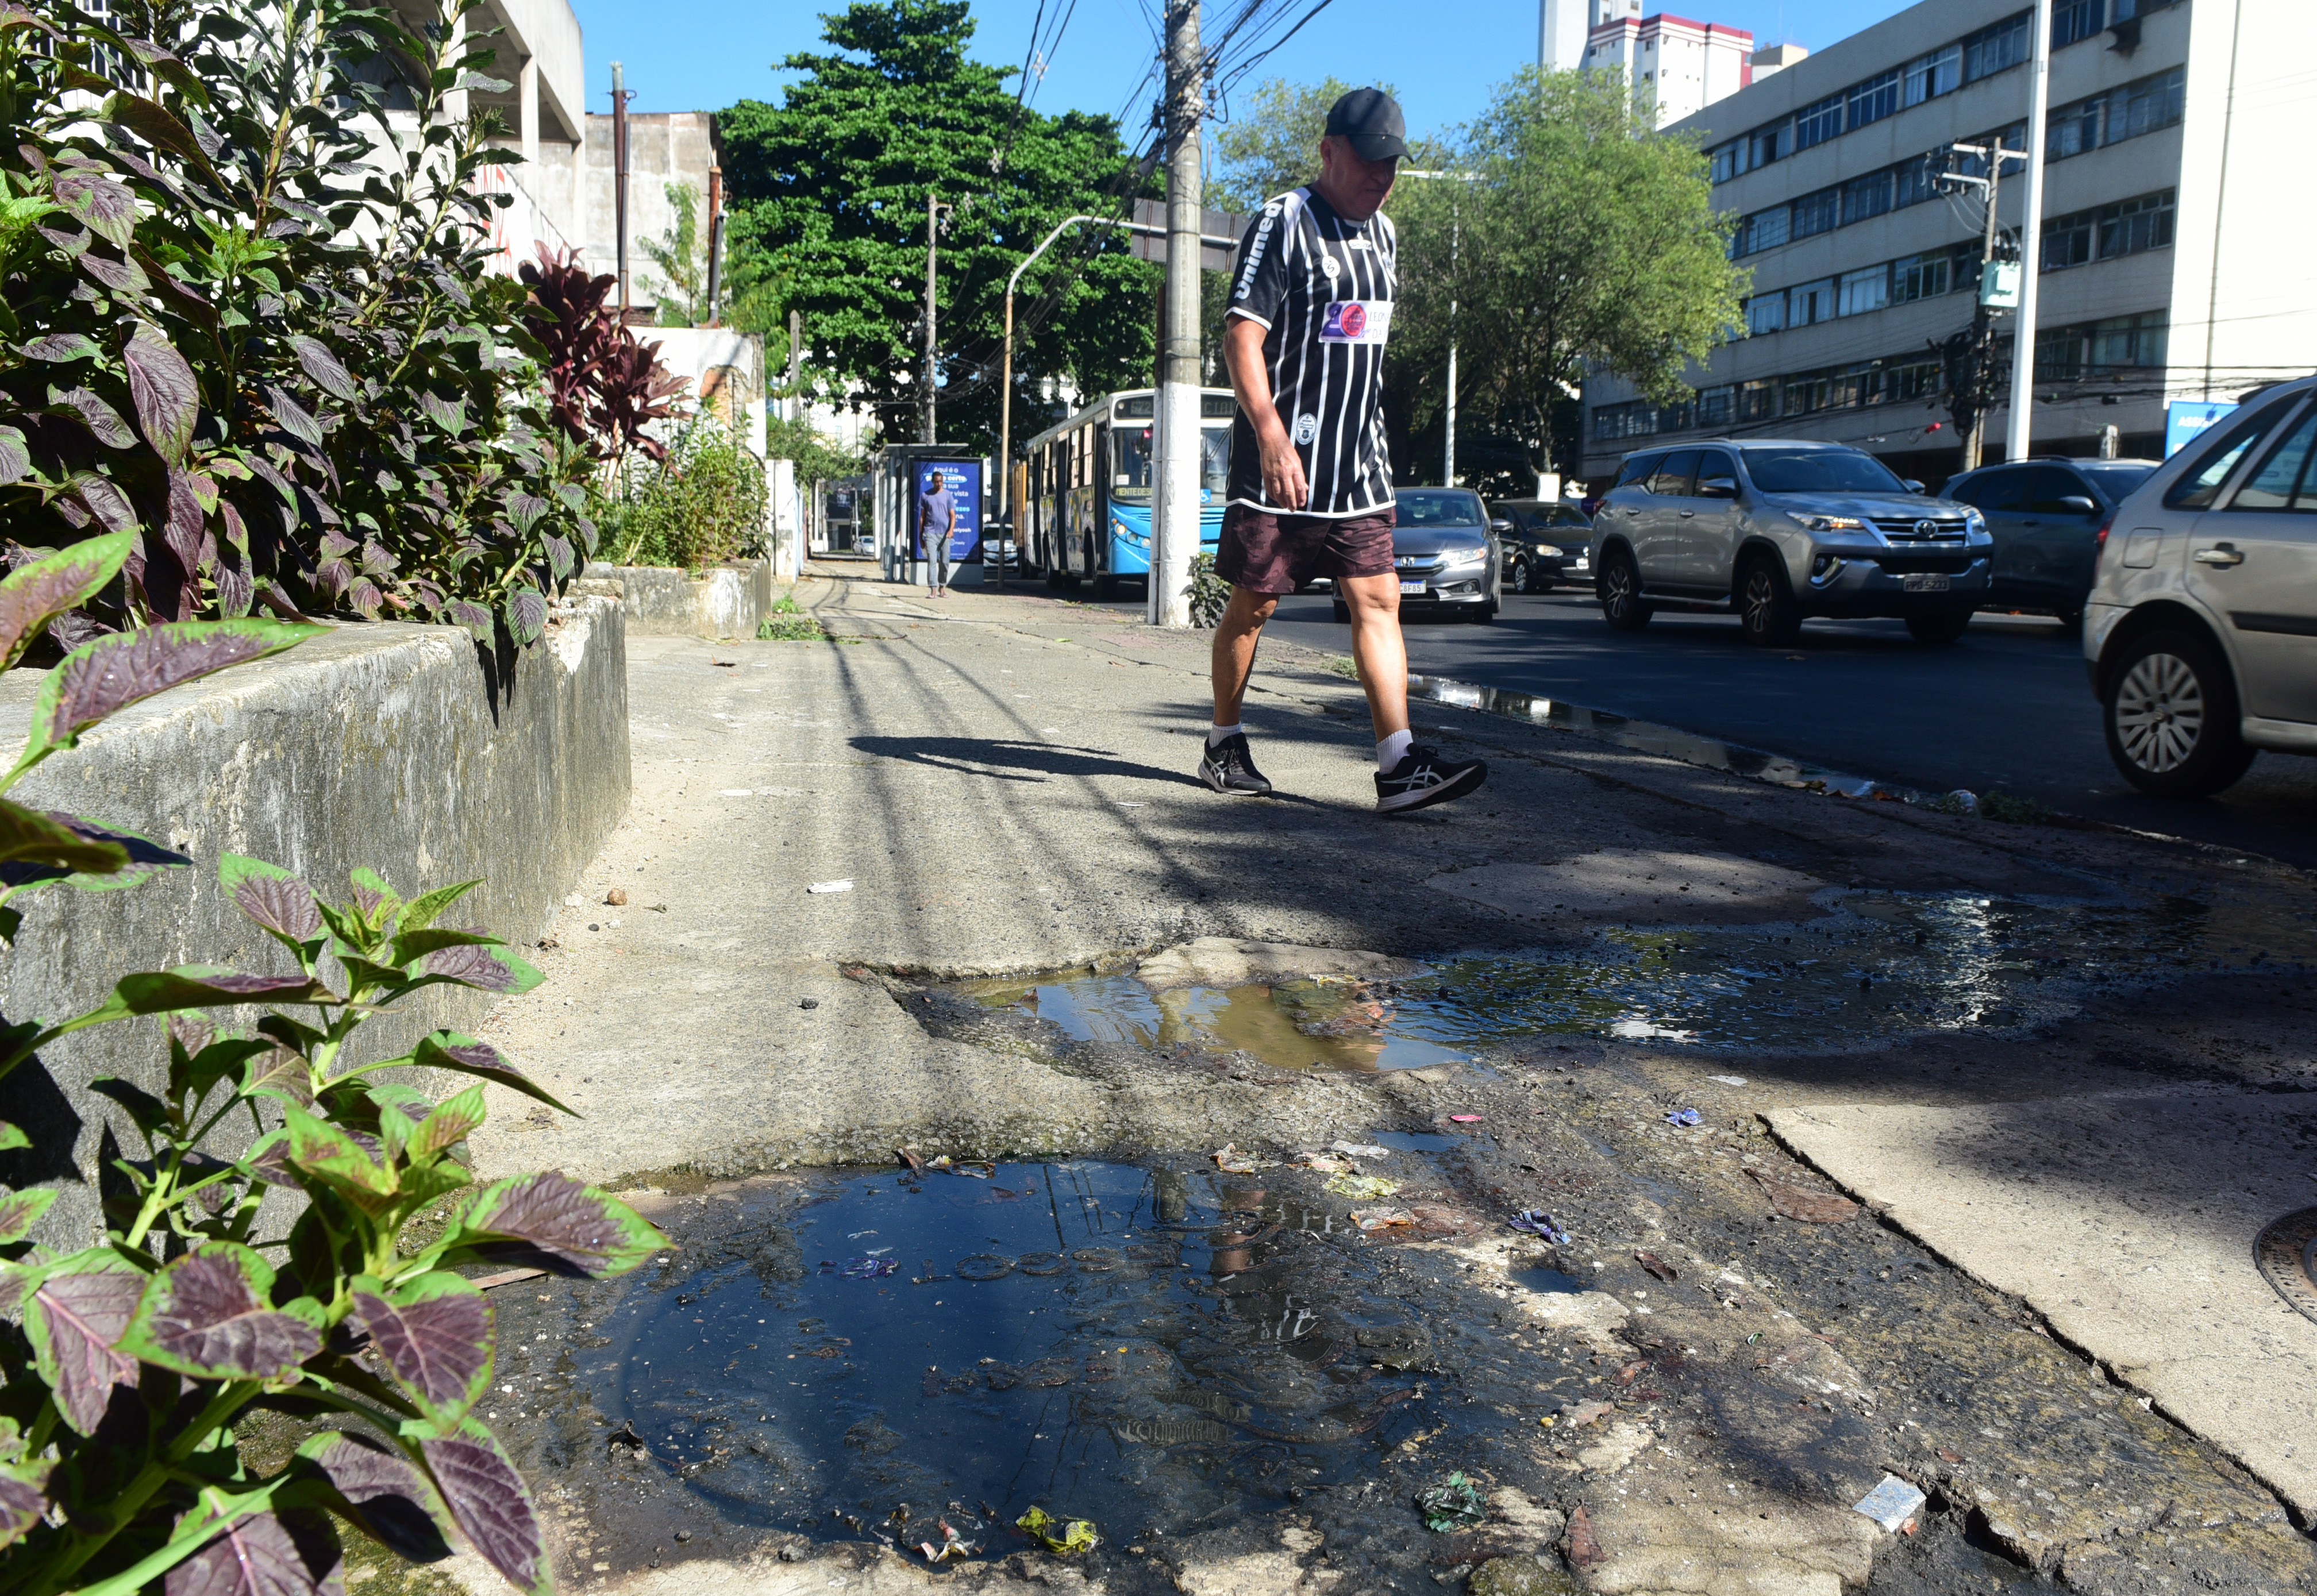 Vazamento da água escura, esverdeada e com mau cheiro, foi flagrado por A Gazeta em um bueiro na altura do bairro Bento Ferreira, na manhã desta sexta-feira (3)